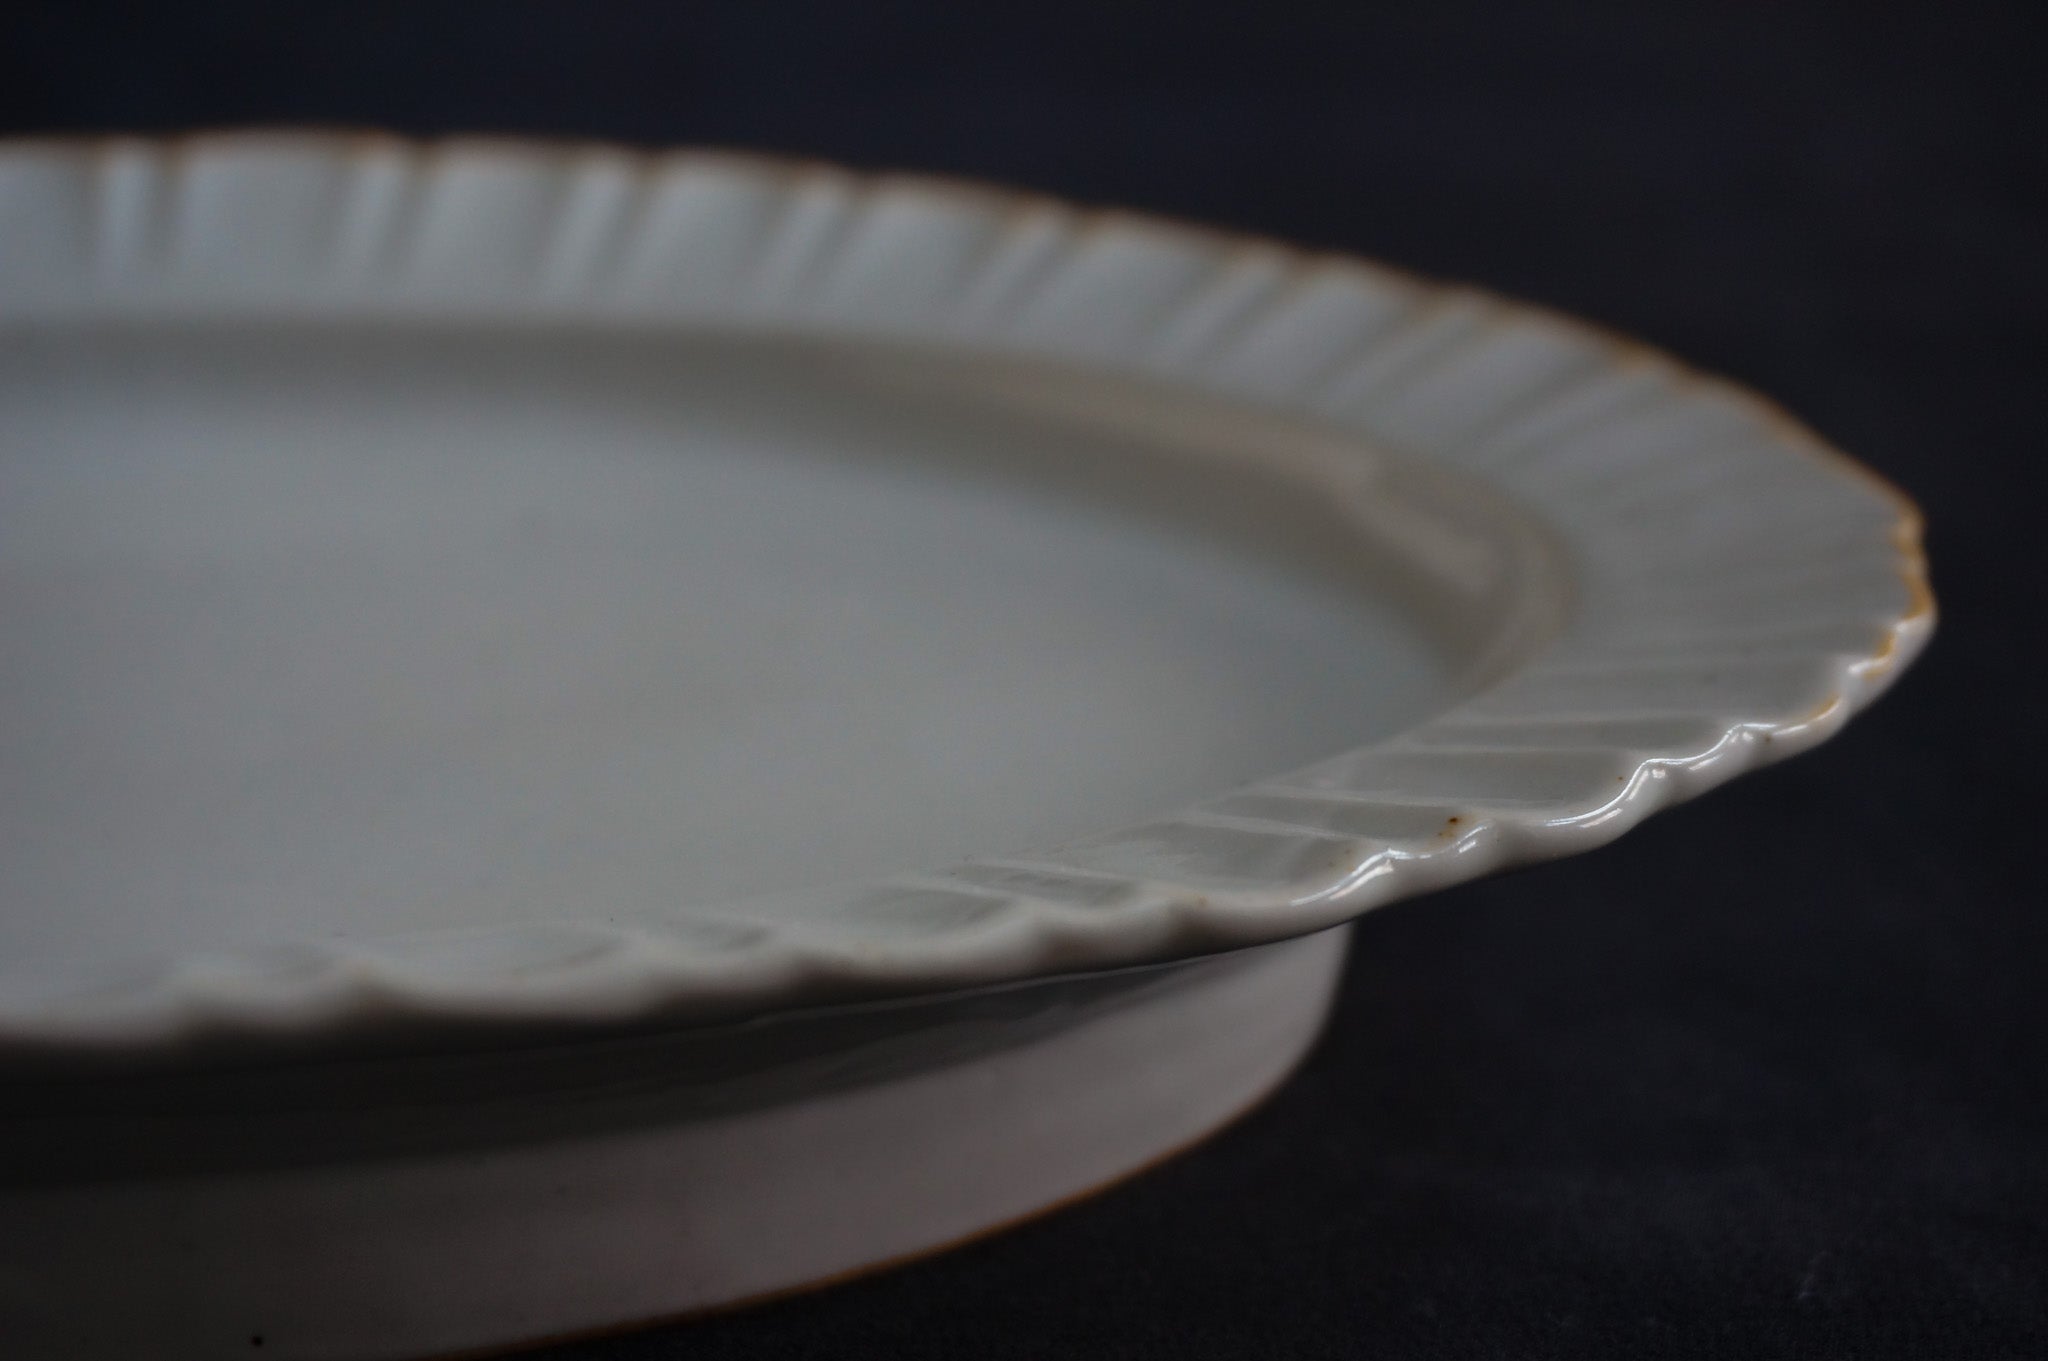 白釉輪花楕円皿